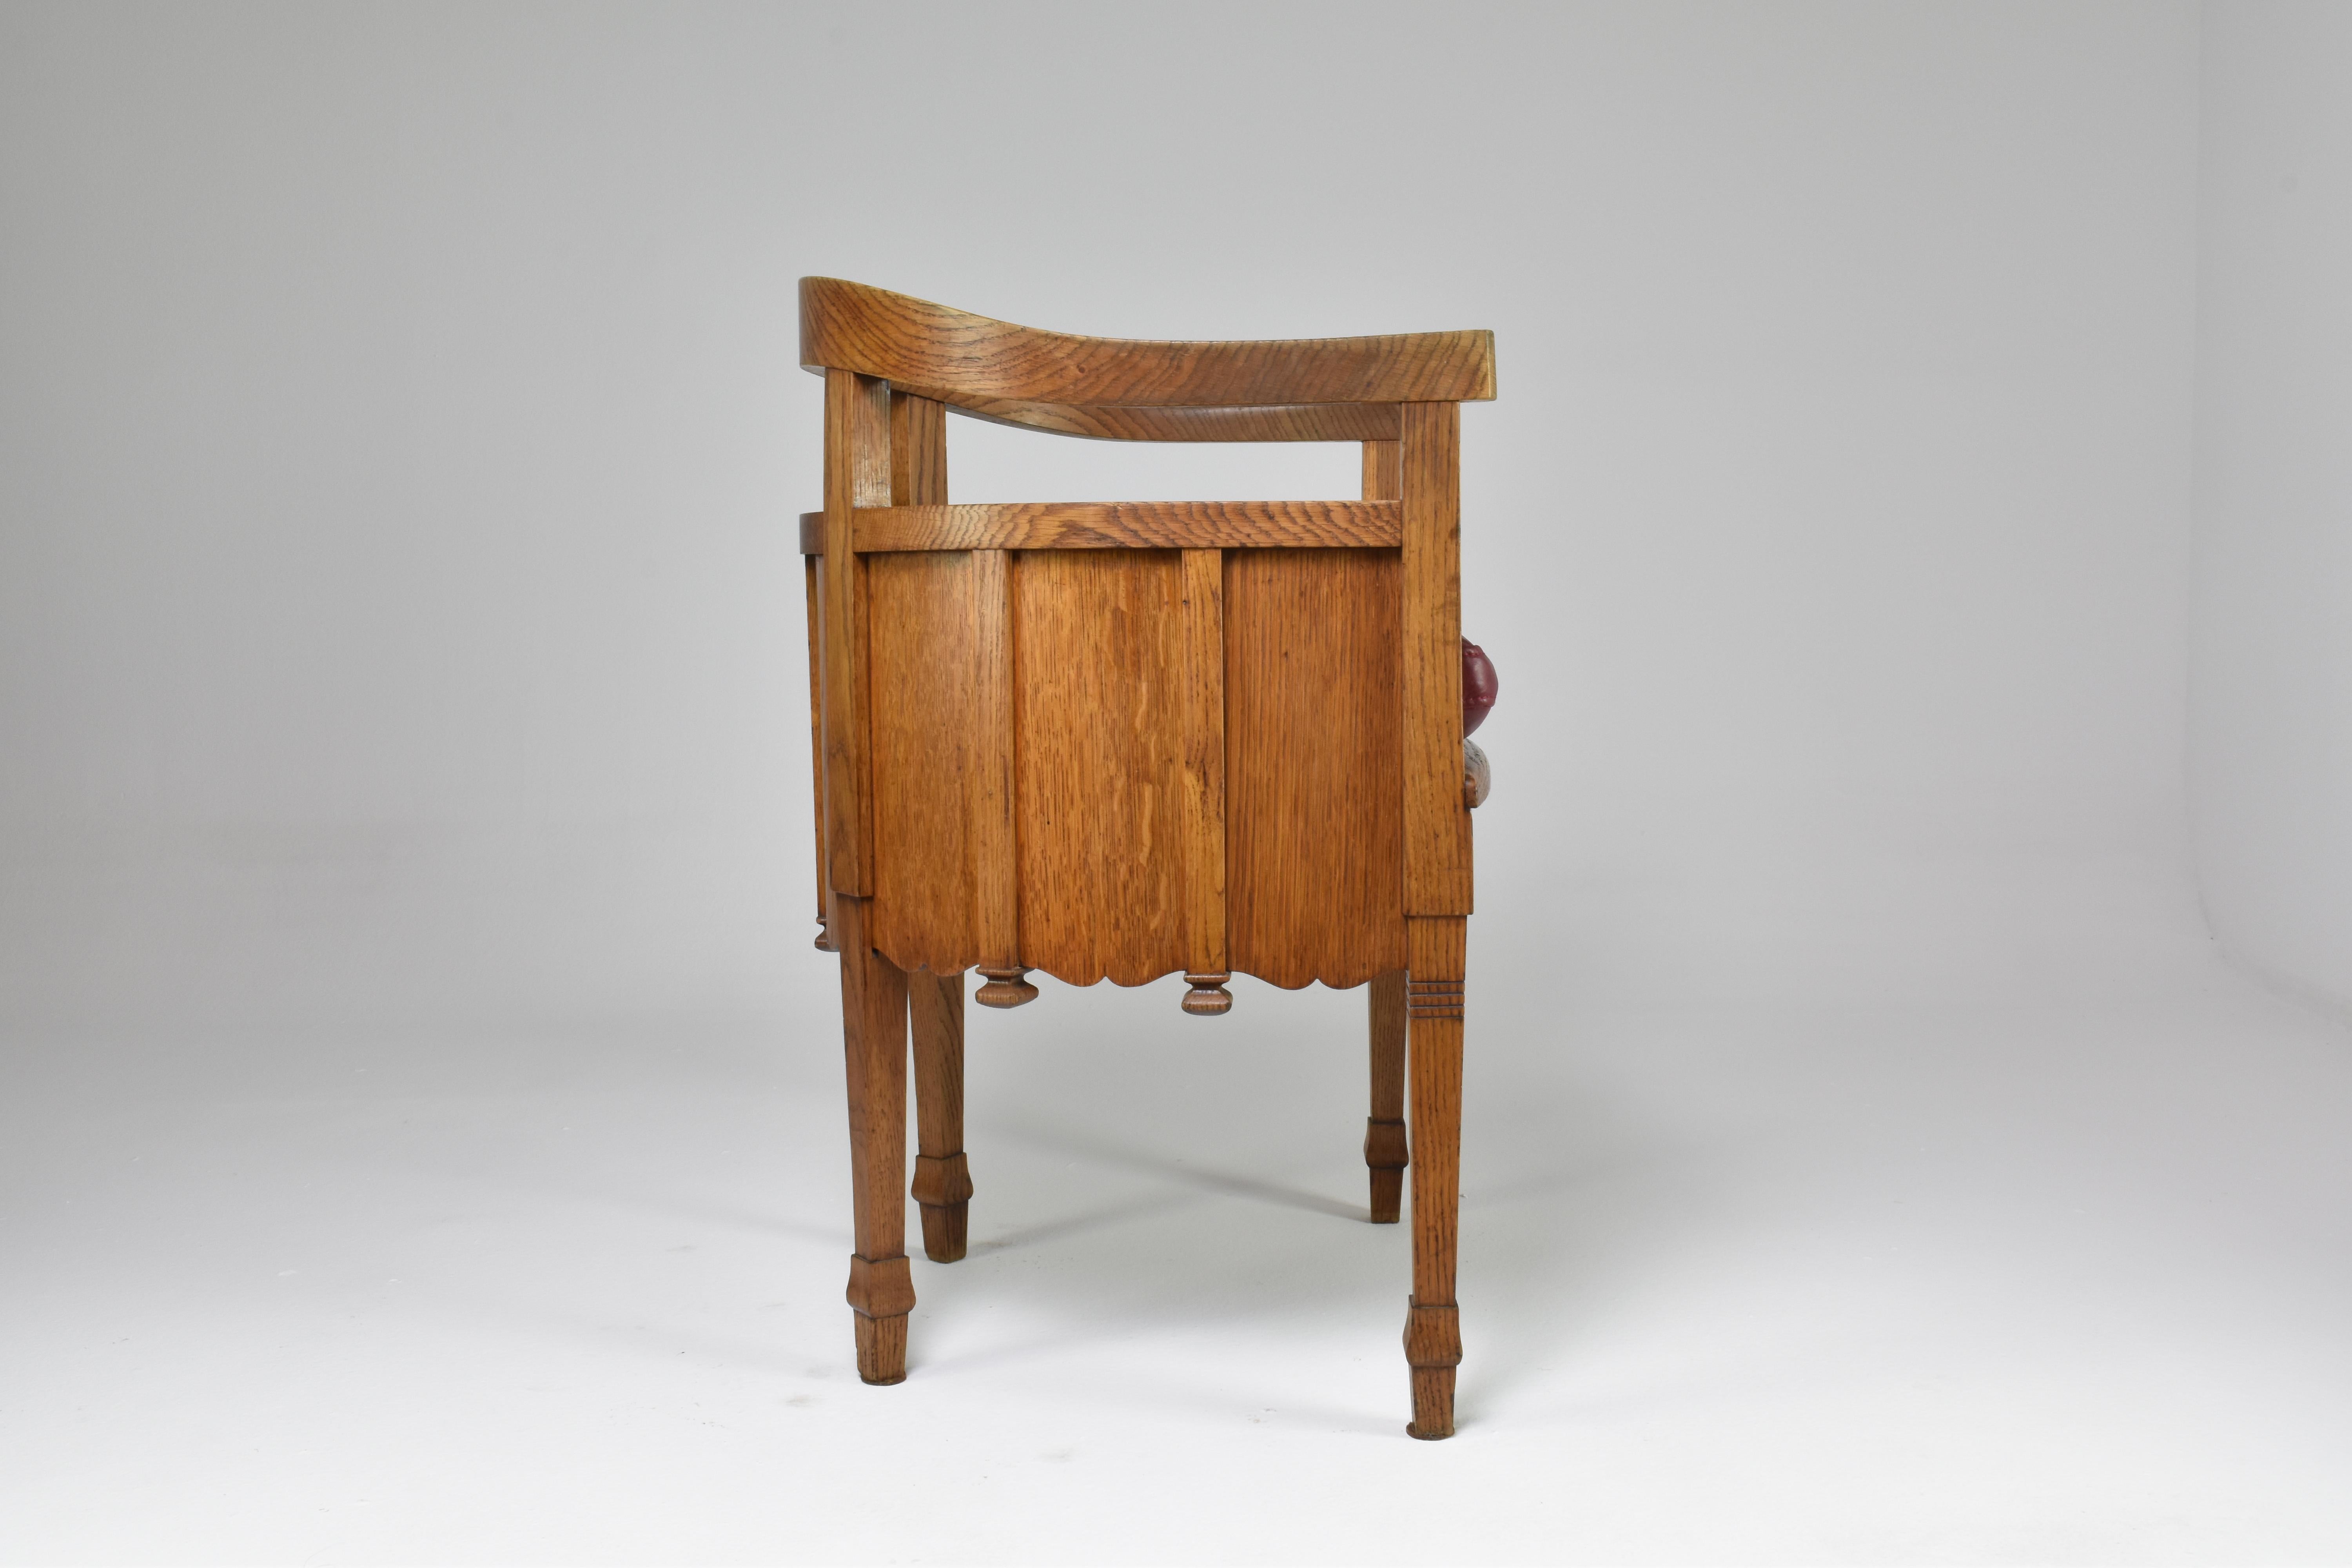  1920's Art Nouveau French Sculpted Oak Art Nouveau Desk with Chair For Sale 15